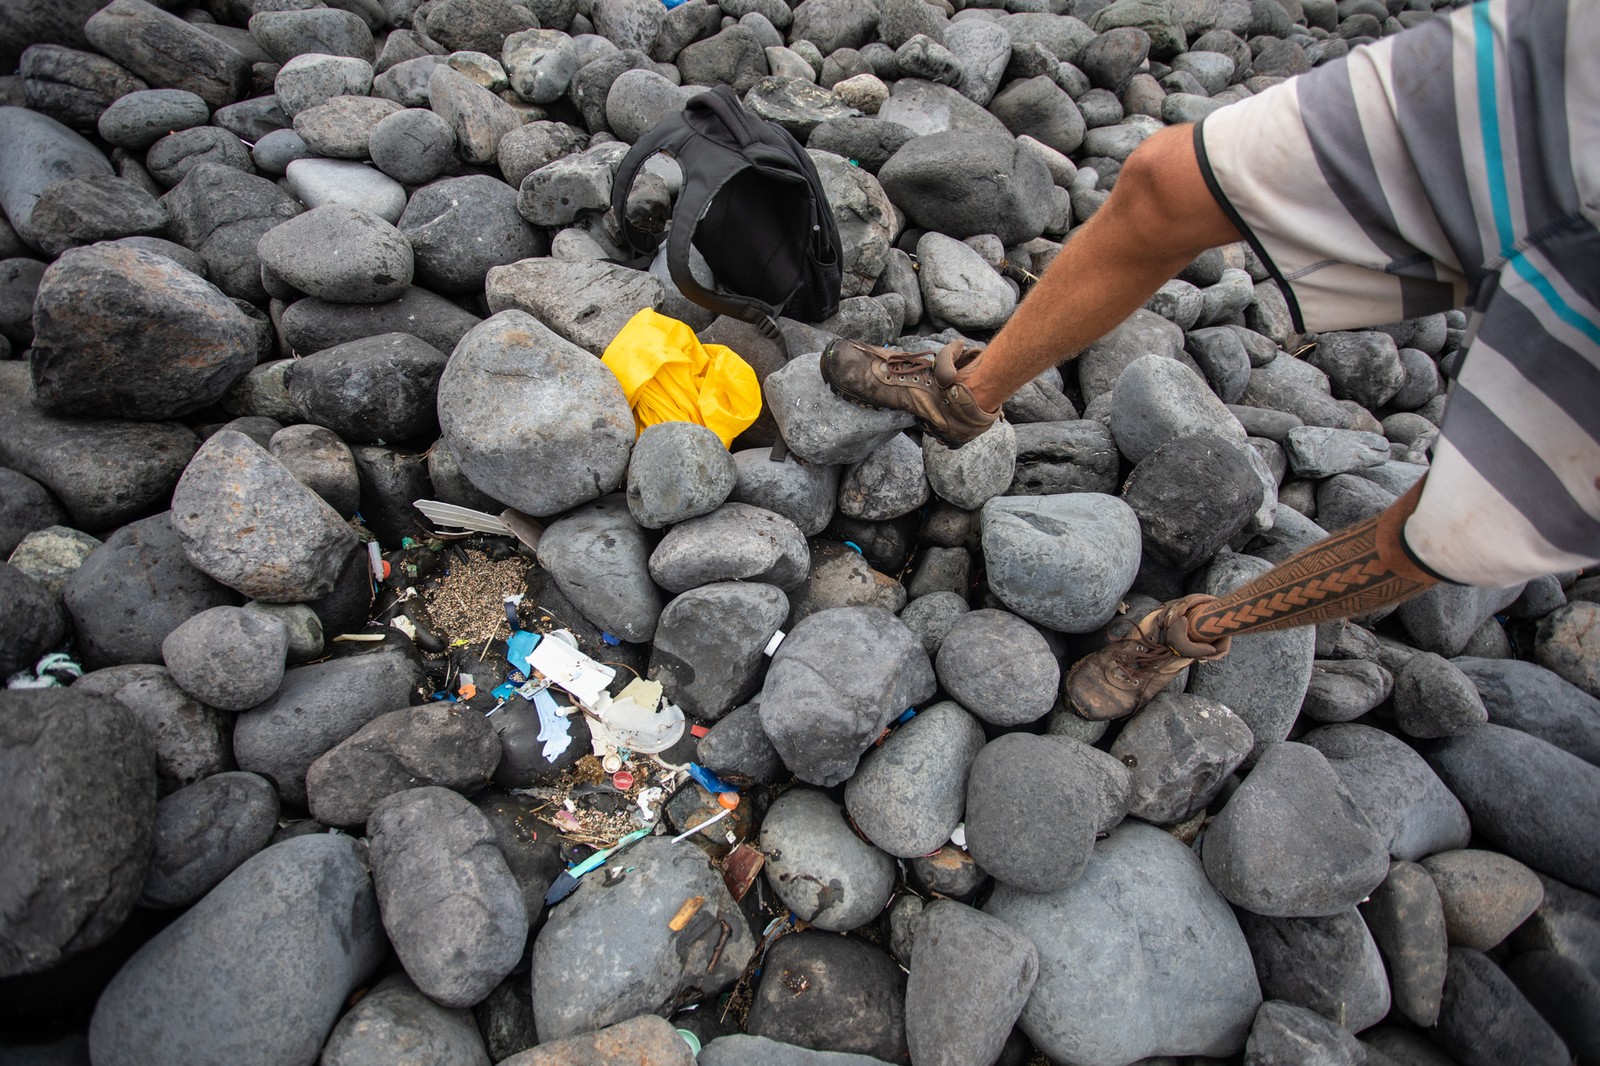 Relatório aponta mais impactos negativos do plástico no meio ambiente e na saúde humana